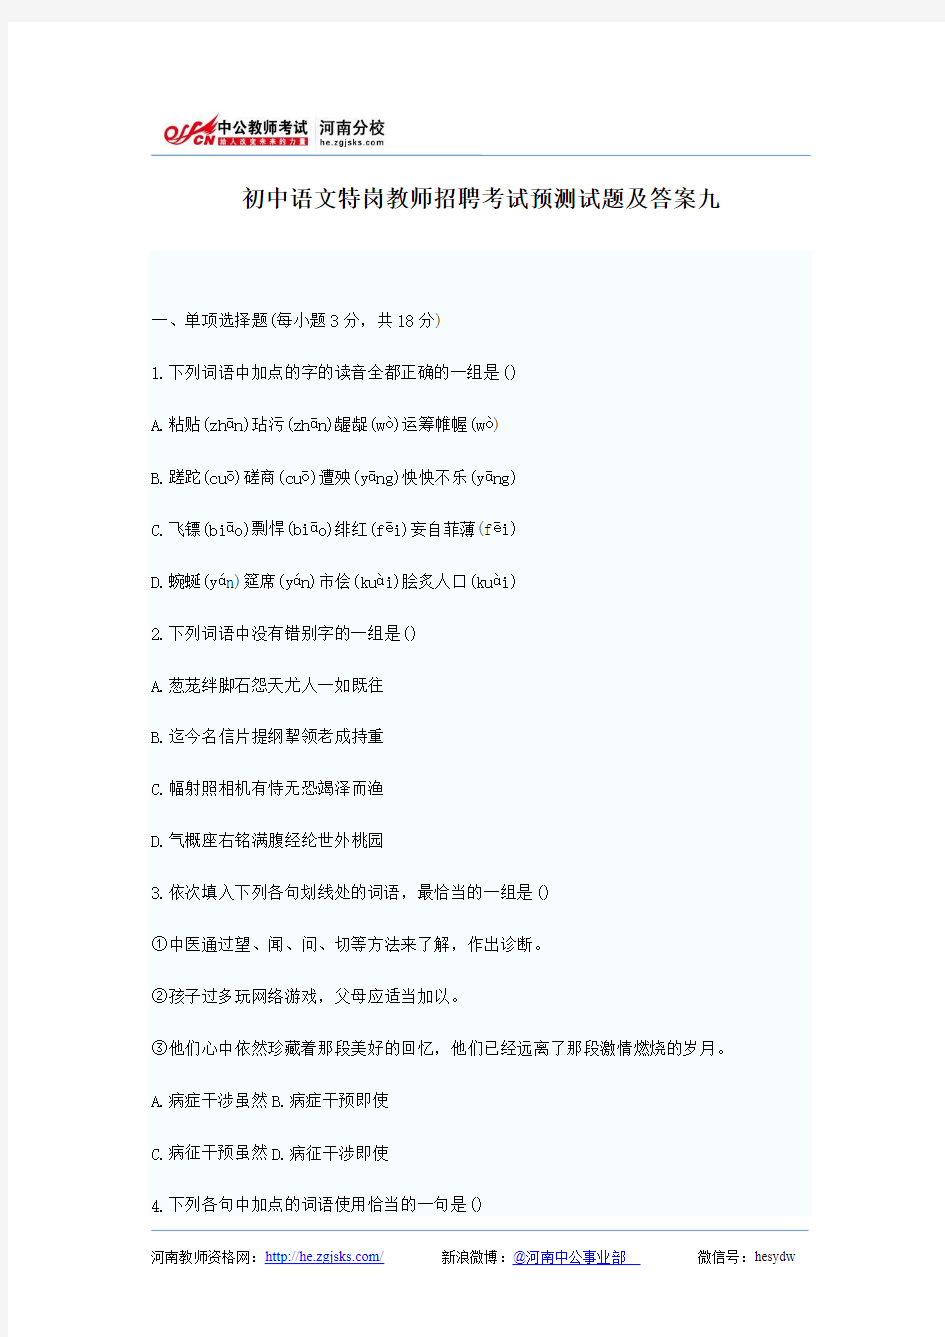 初中语文特岗教师招聘考试预测试题及答案九